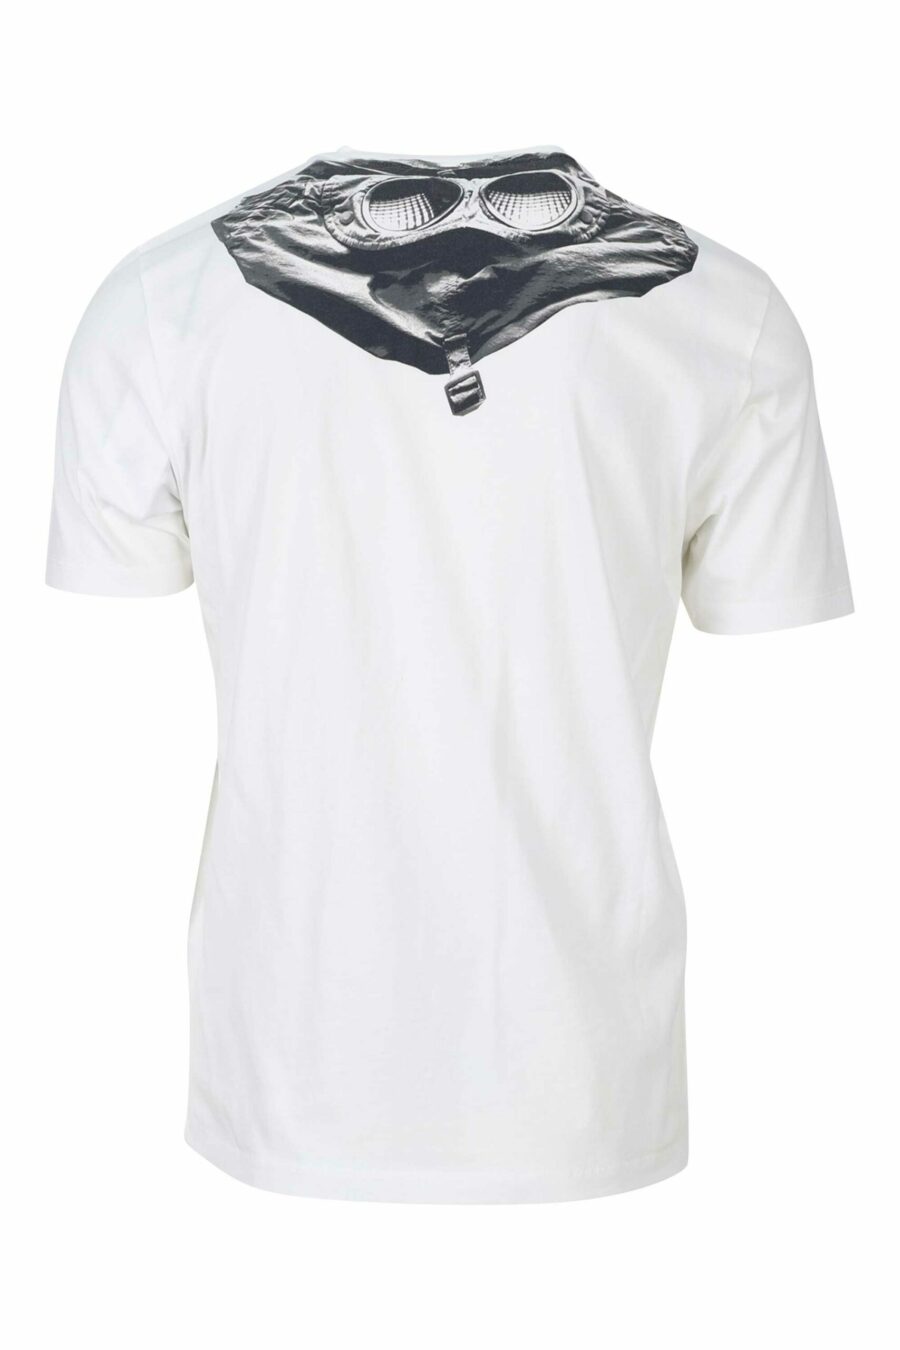 T-shirt branca com capuz e emblema do logótipo - 7620943570397 1 1 à escala